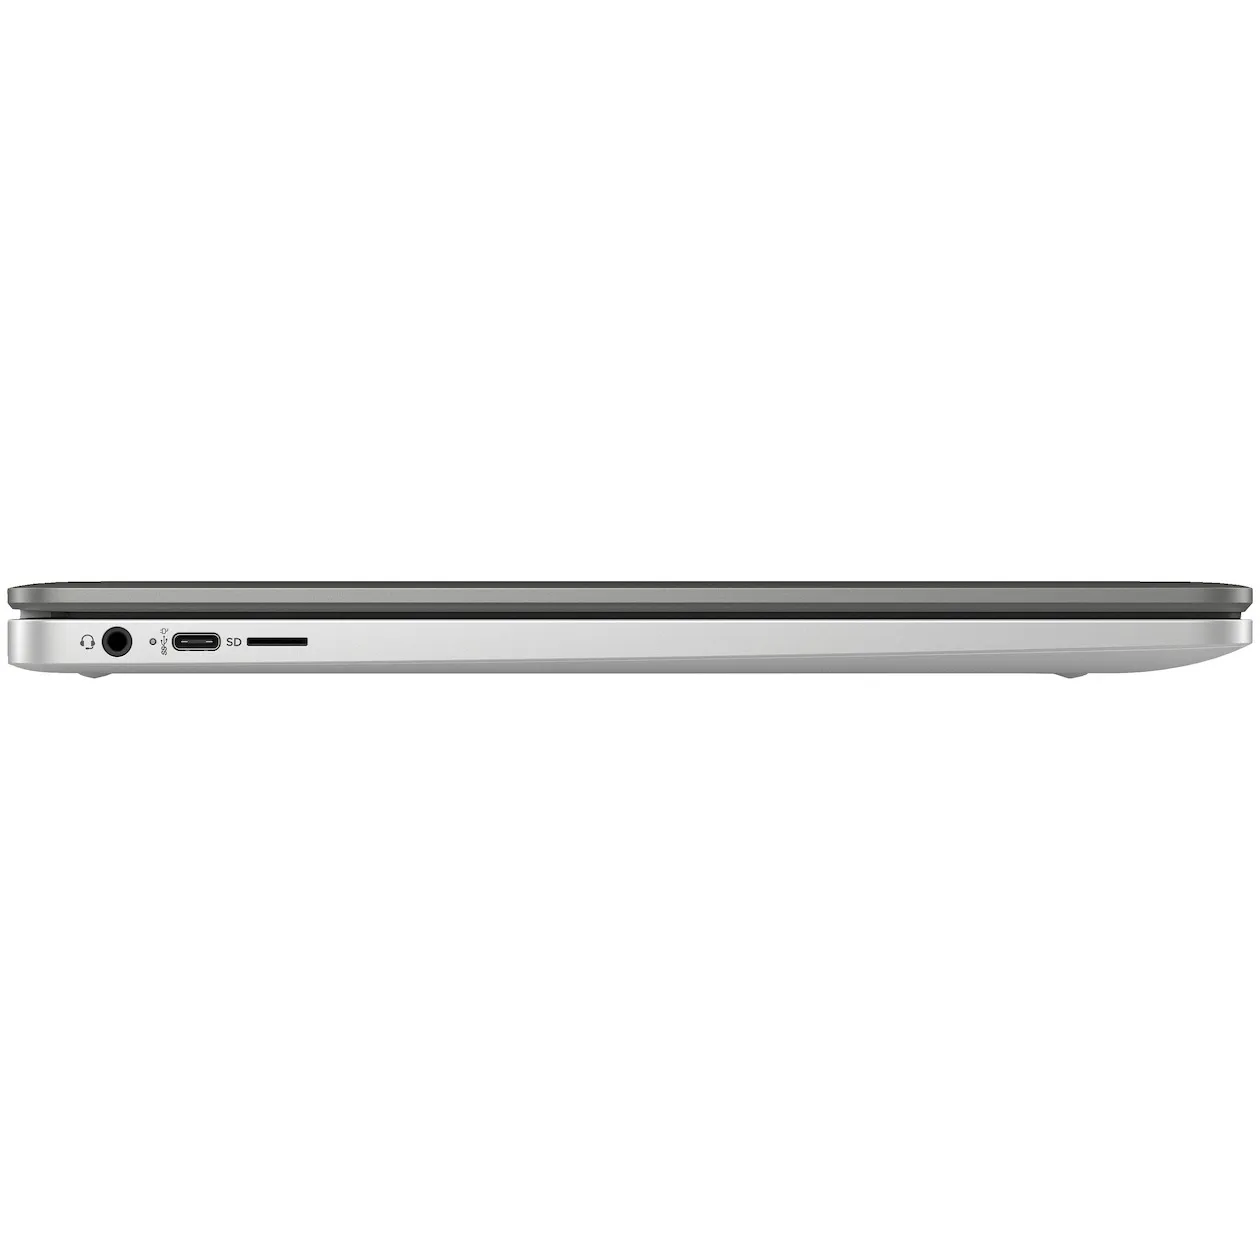 HP Chromebook 15a-na0260nd